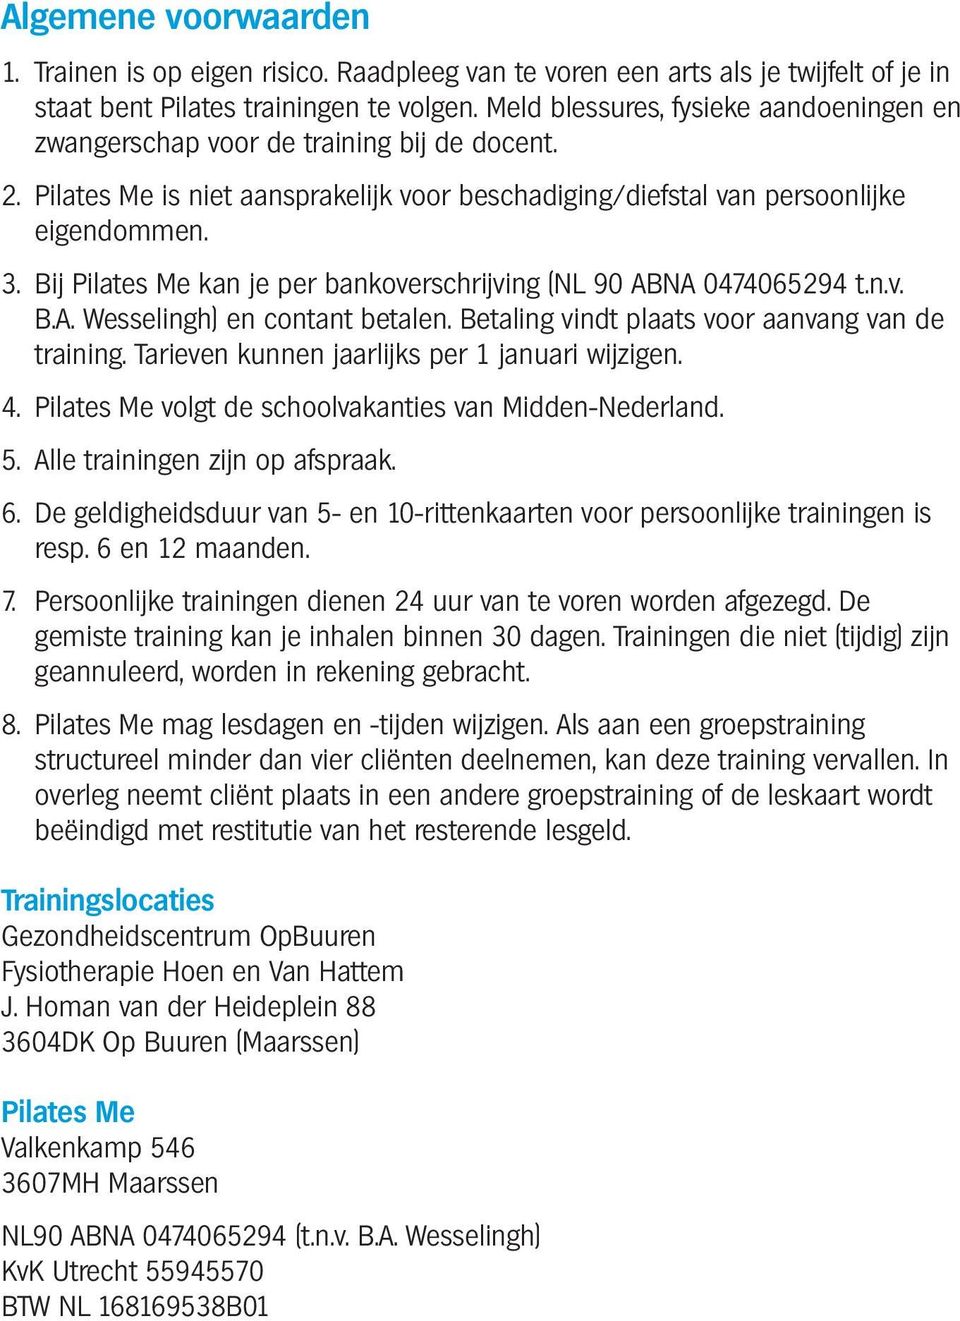 Bij Pilates Me kan je per bankoverschrijving (NL 90 ABNA 0474065294 t.n.v. B.A. Wesselingh) en contant betalen. Betaling vindt plaats voor aanvang van de training.